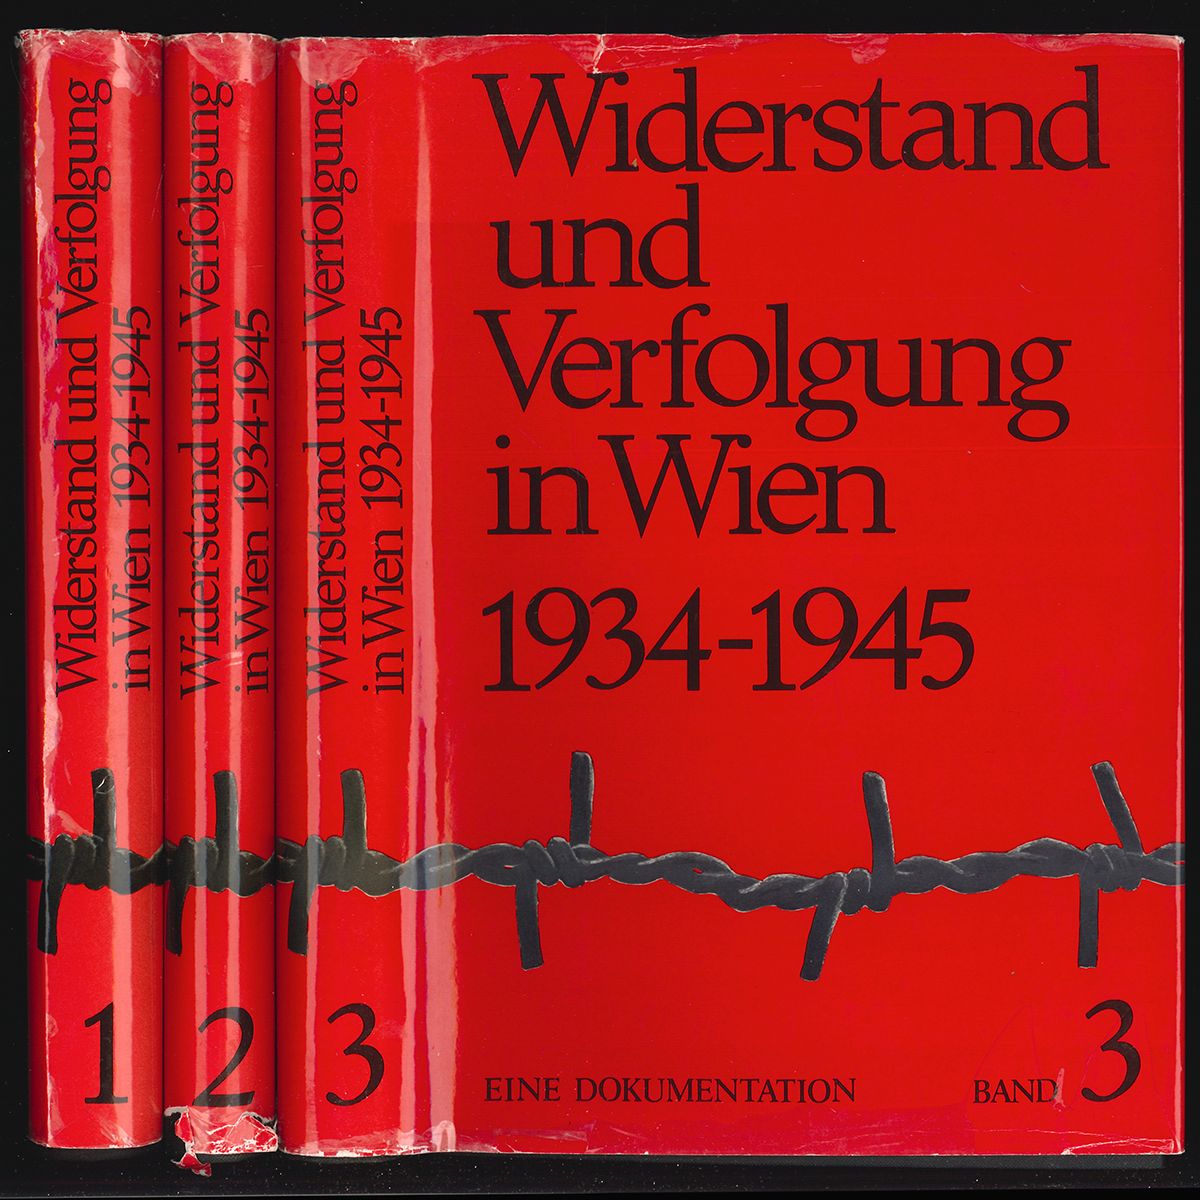 NEUGEBAUER, Wolfgang. Widerstand und Verfolgung in Wien 1934 - 1945. Eine Dokumentation. Herausgeber: Dokumentationsarchiv des sterreichischen Widerstands.